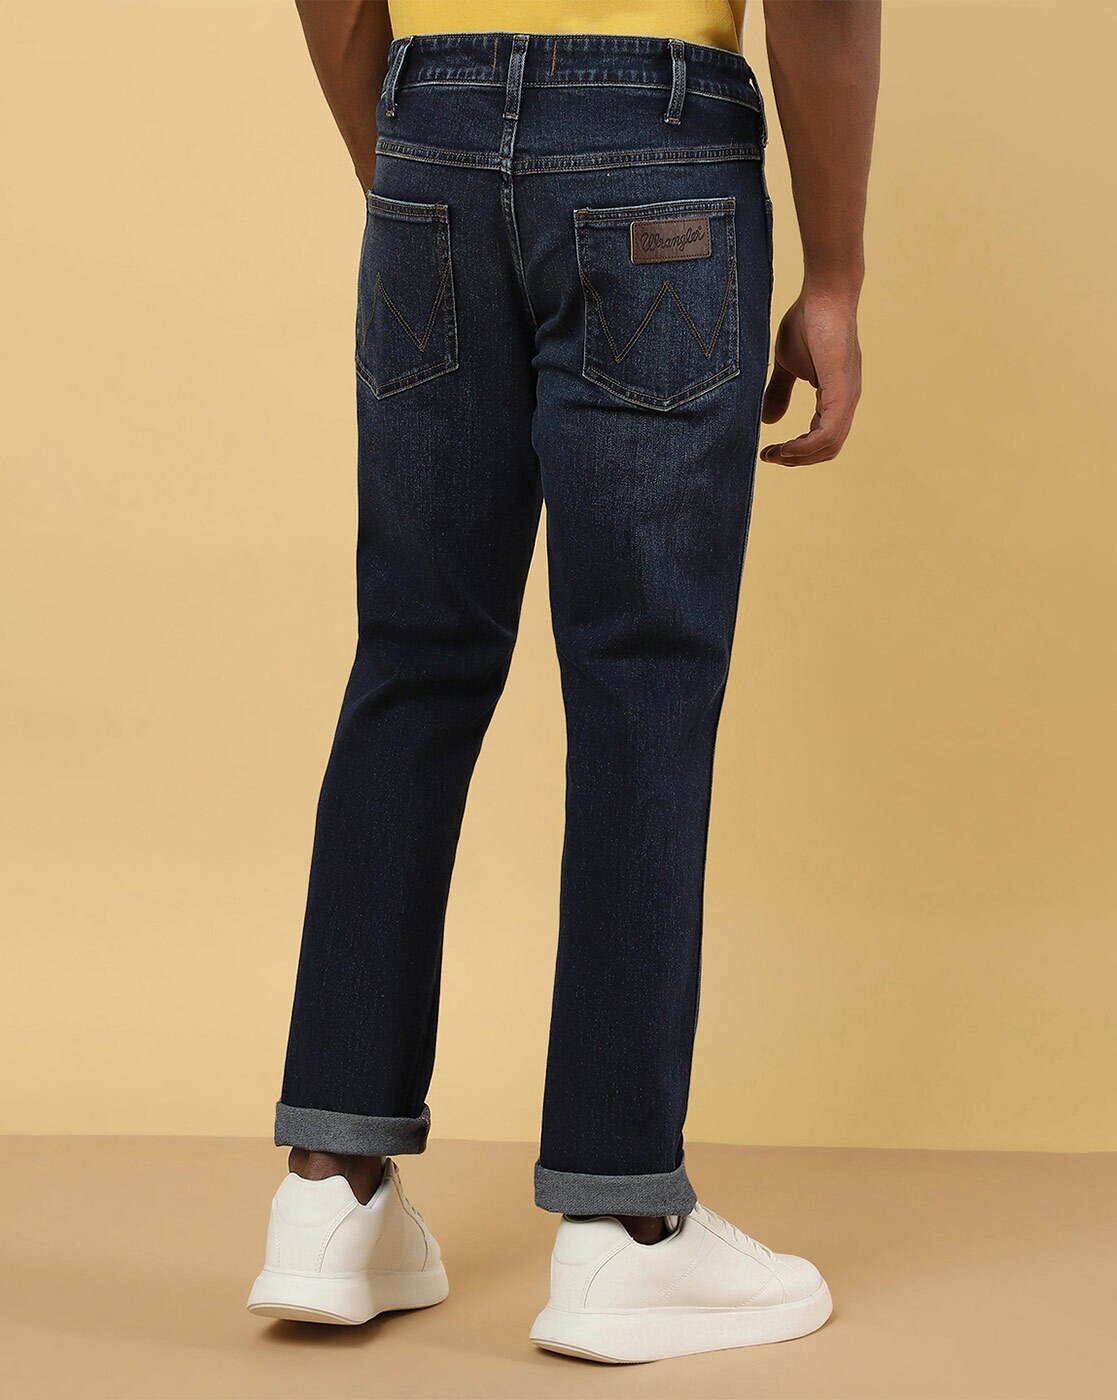 Buy Blue Jeans for Men Wrangler | Ajio.com